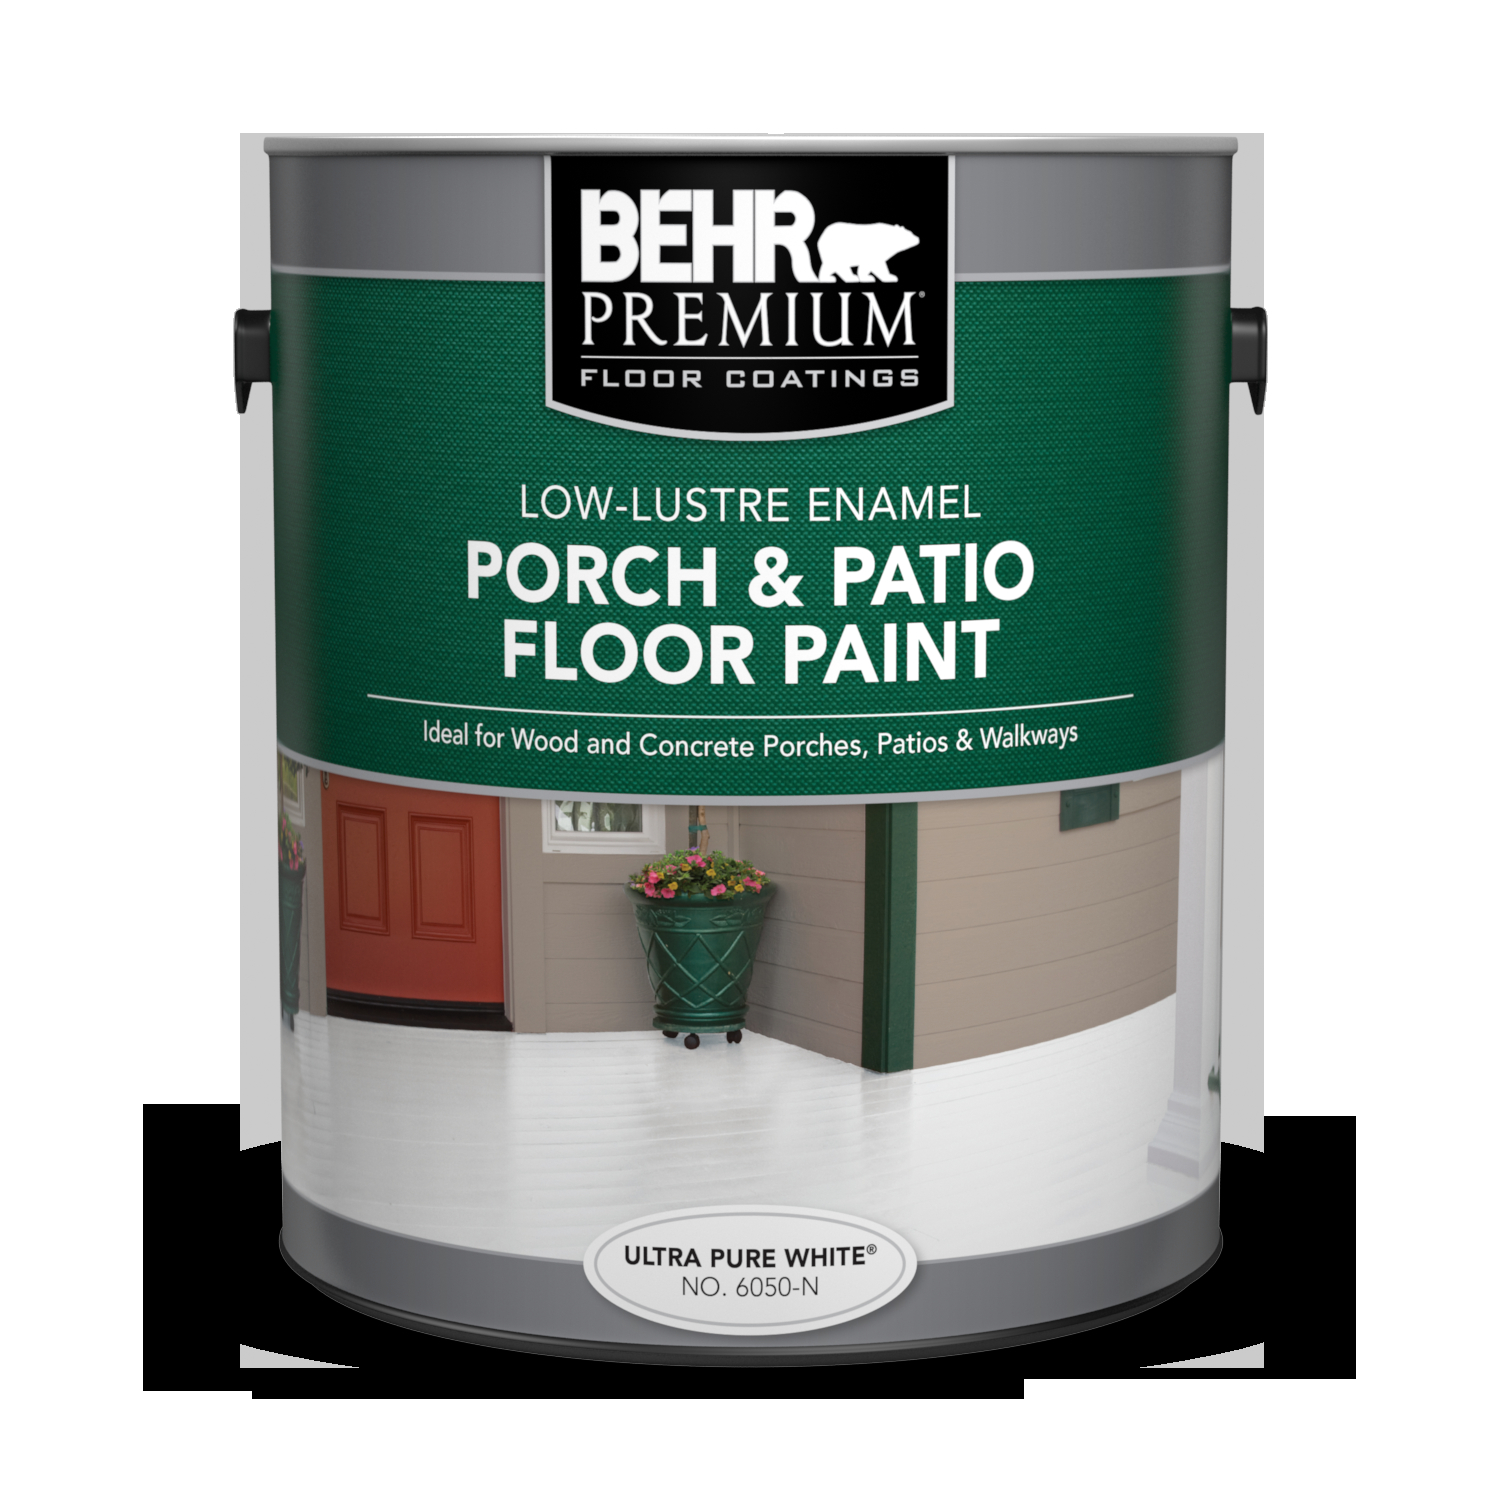 Porch Patio Floor Paint Low Lustre Enamel Behr Premium pertaining to size 1500 X 1500